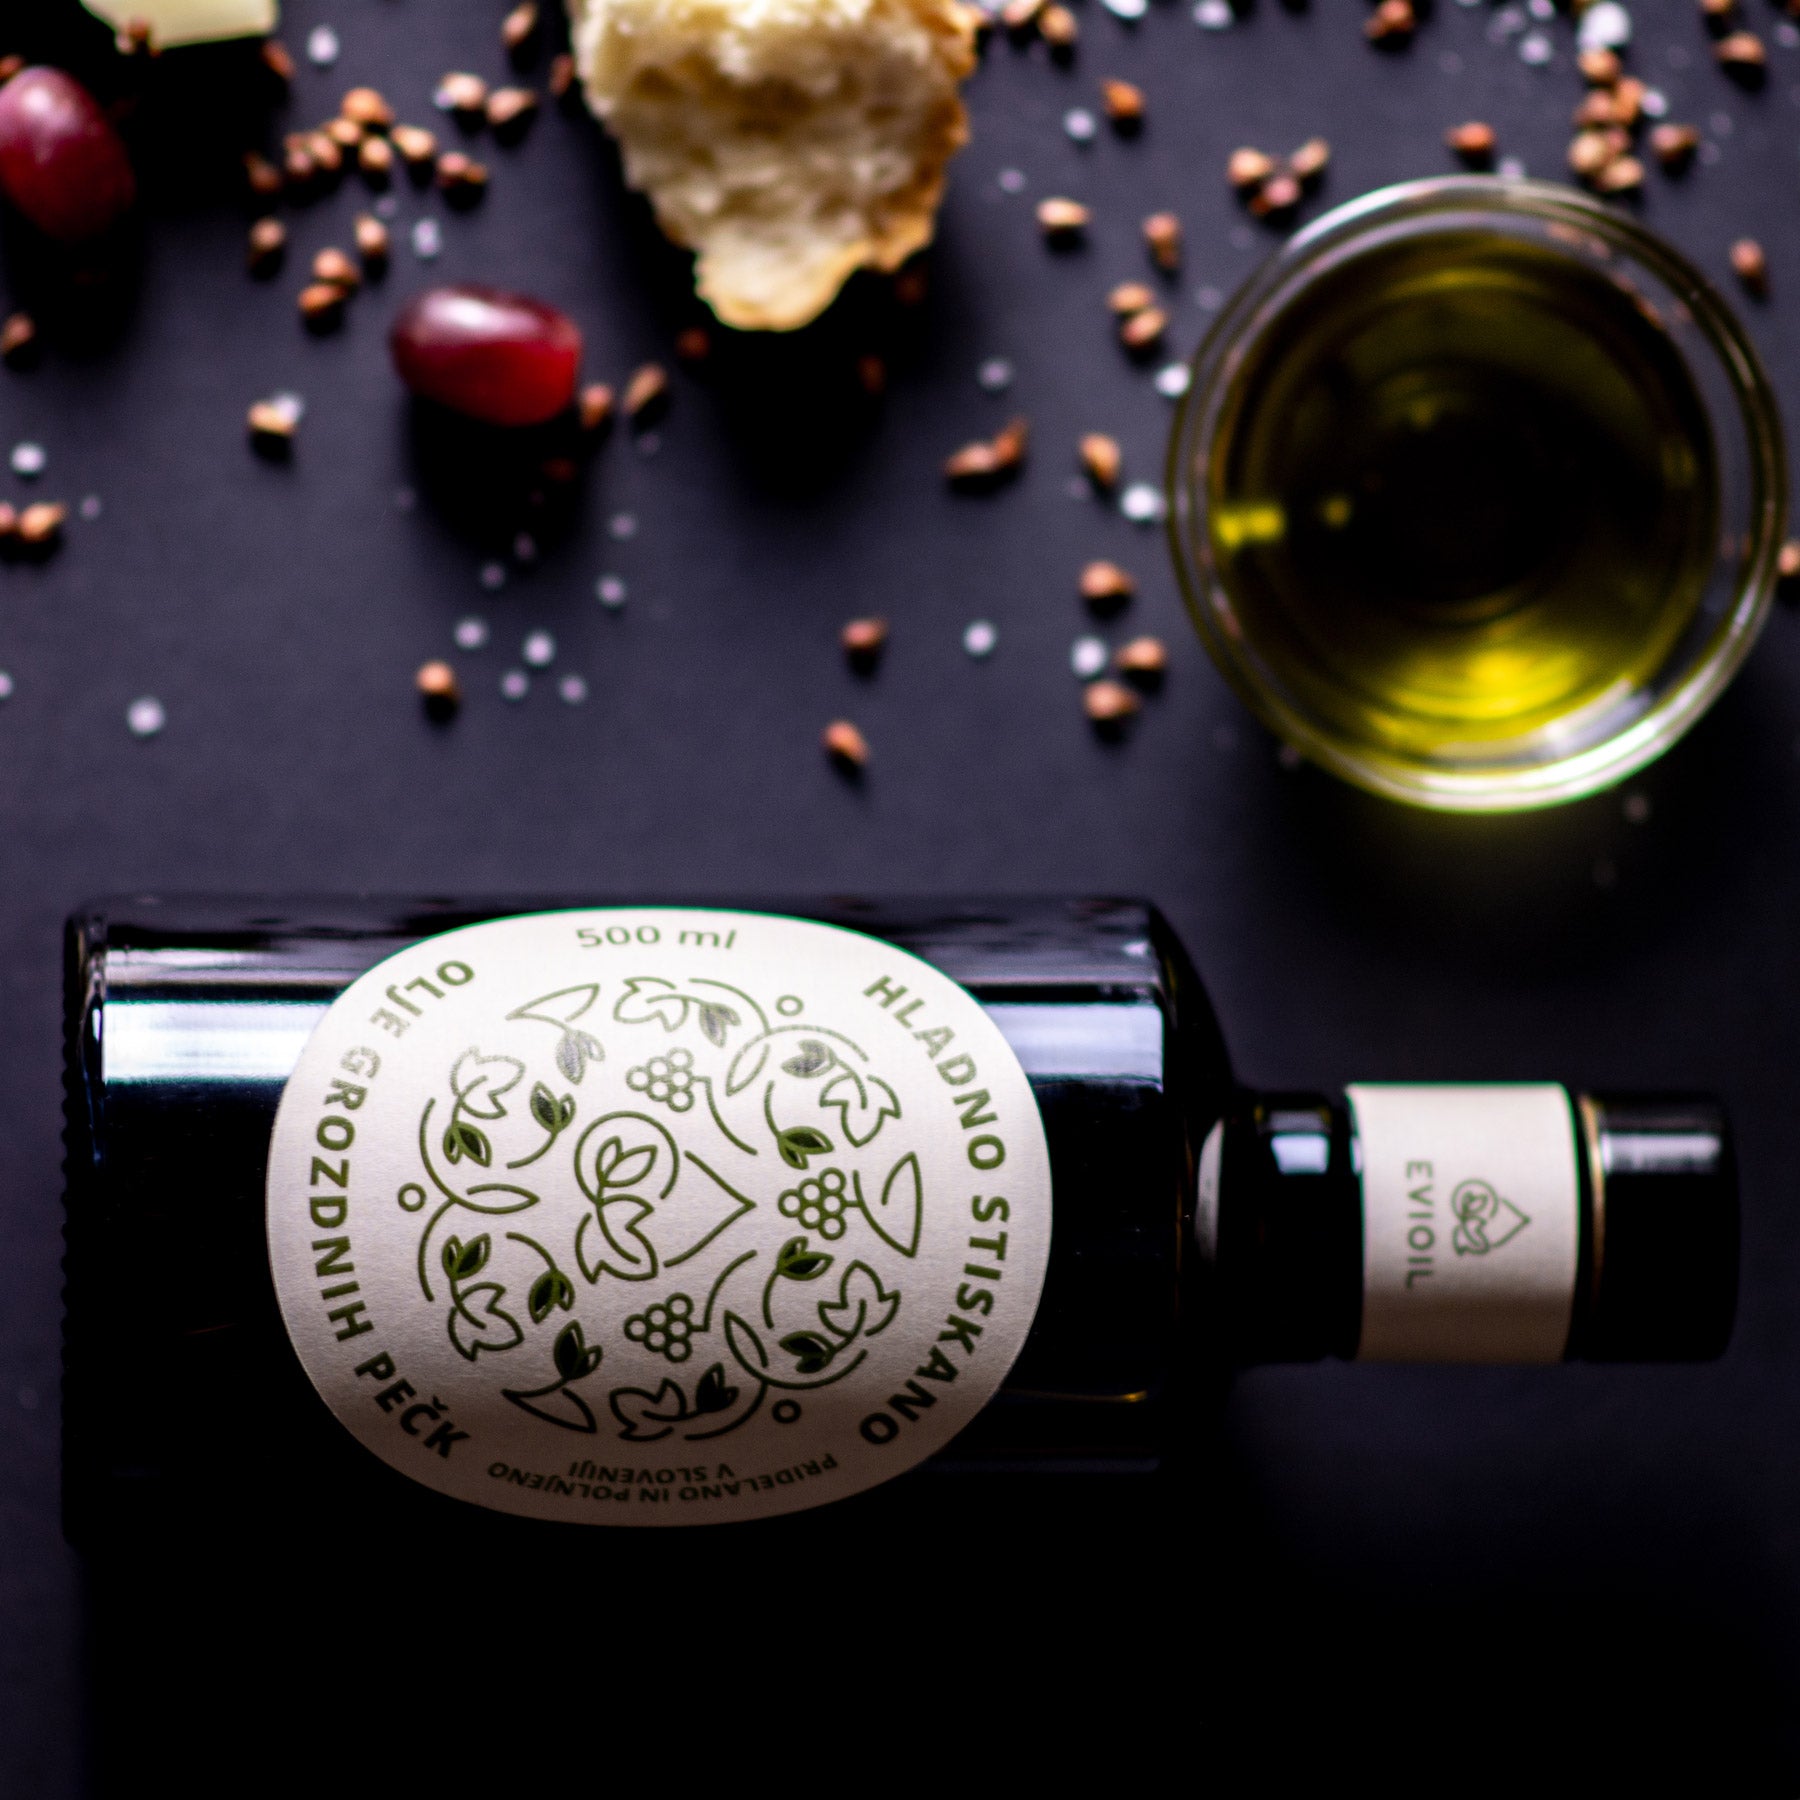 Olje grozdnih pešk Evioil kulinarična specialiteta za pogostitev ali za darilo, grapeseed oil gourmet or as a gift